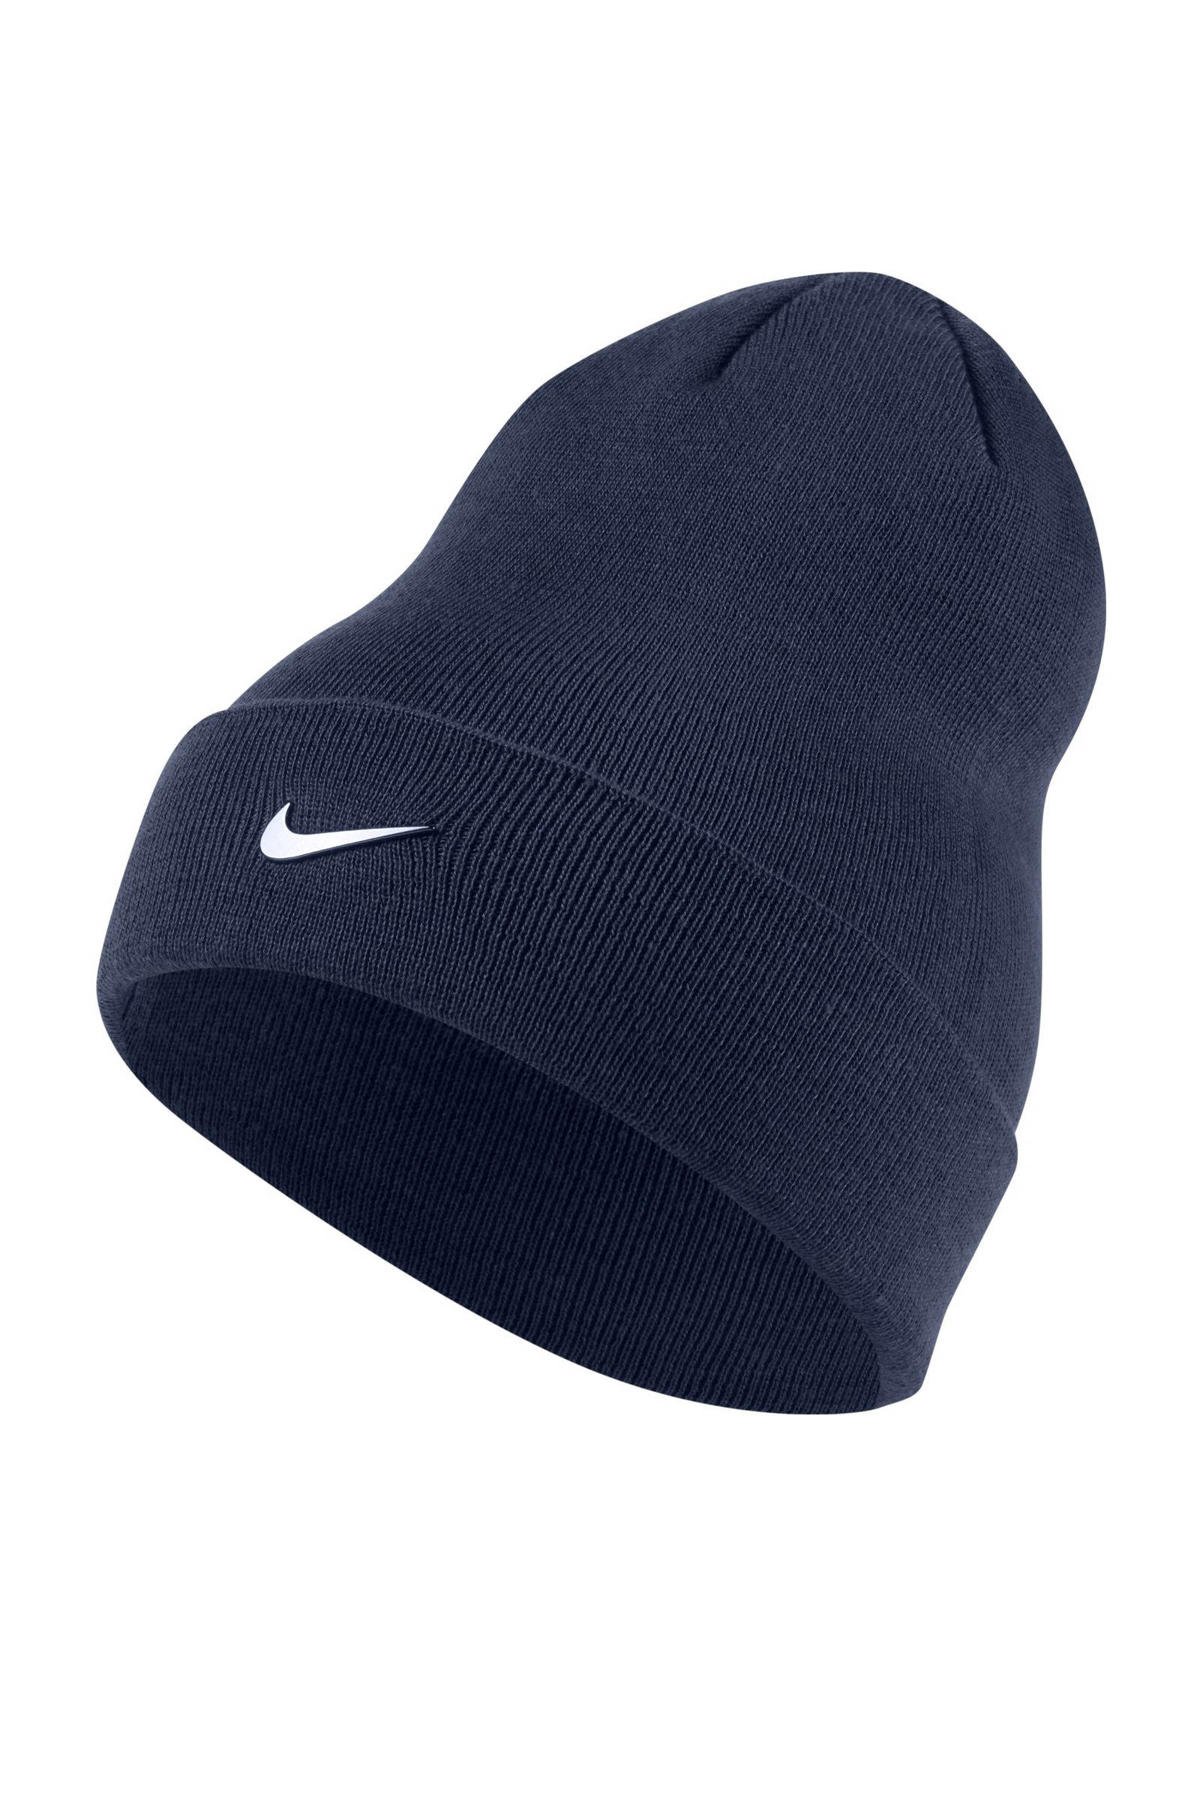 warm Op de kop van Zeker Nike muts donkerblauw | wehkamp